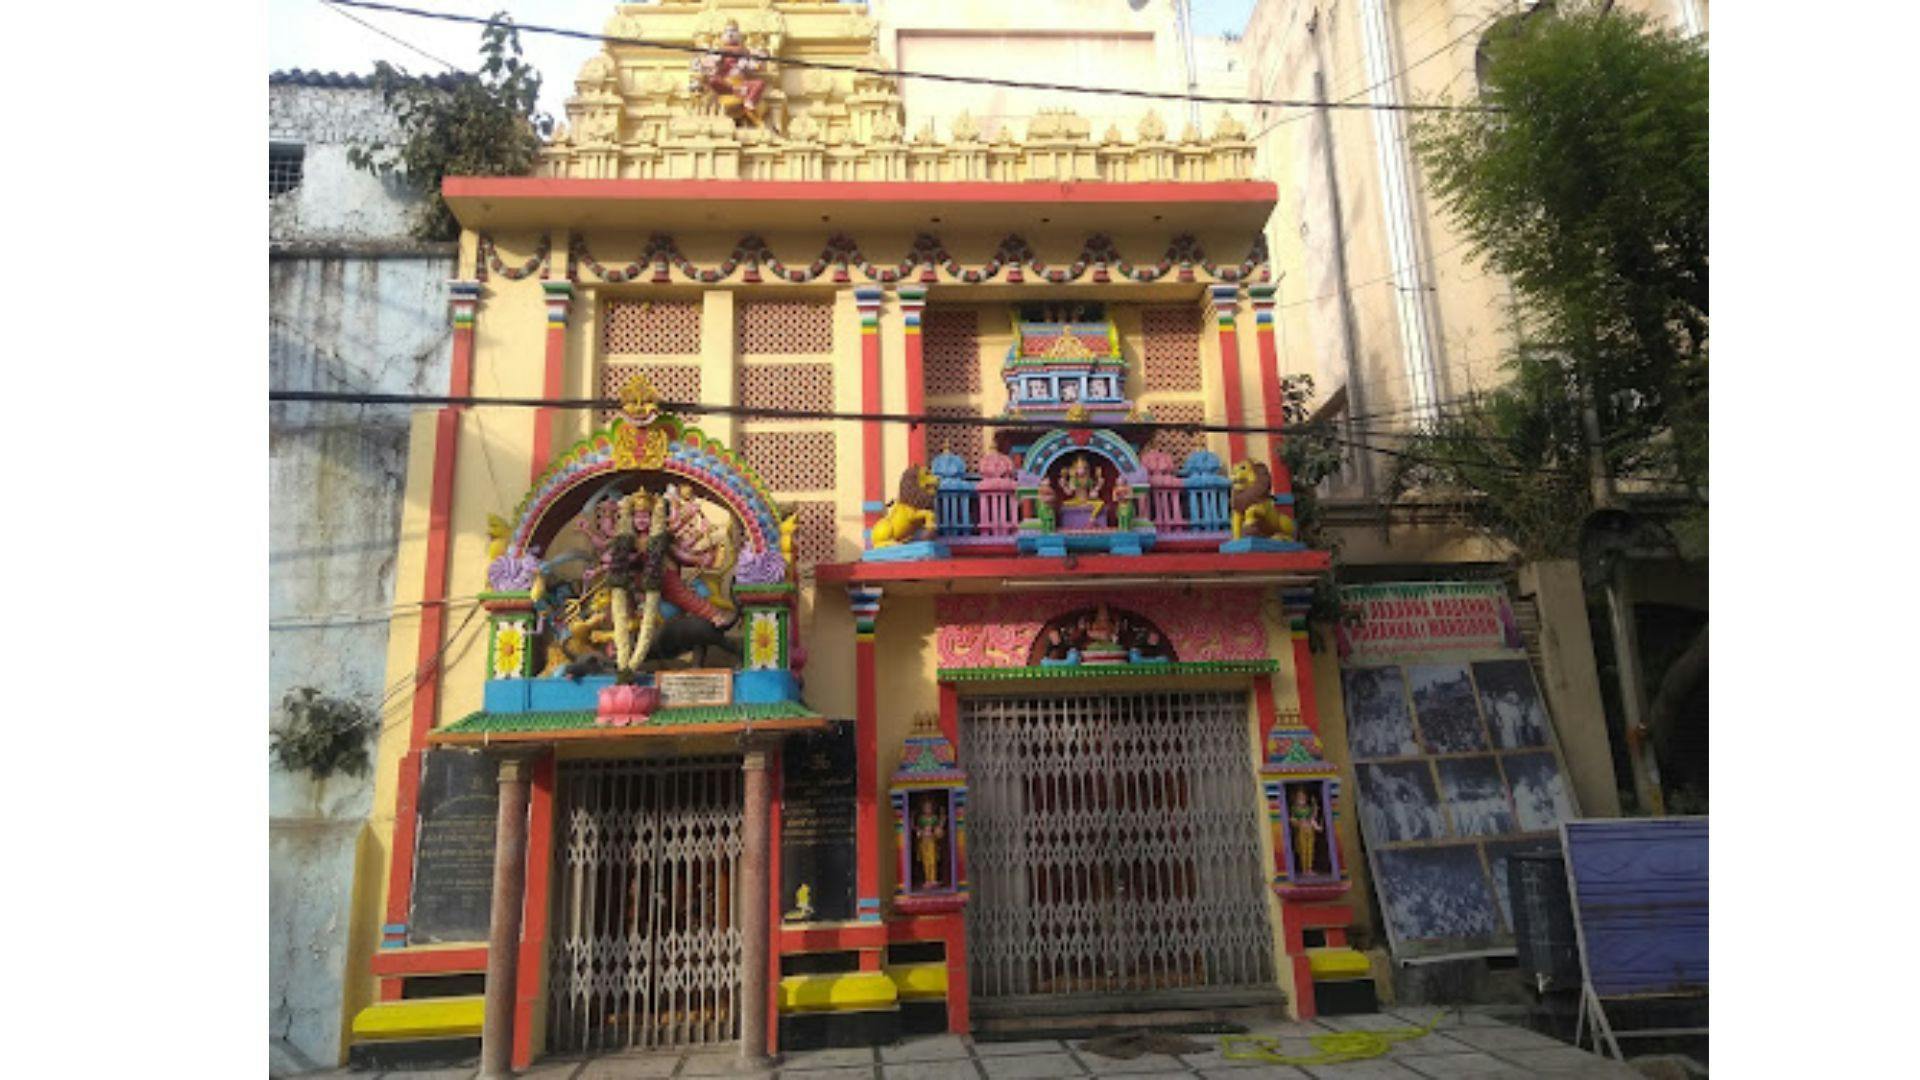 Akkanna Maddanna Temple near Charminar